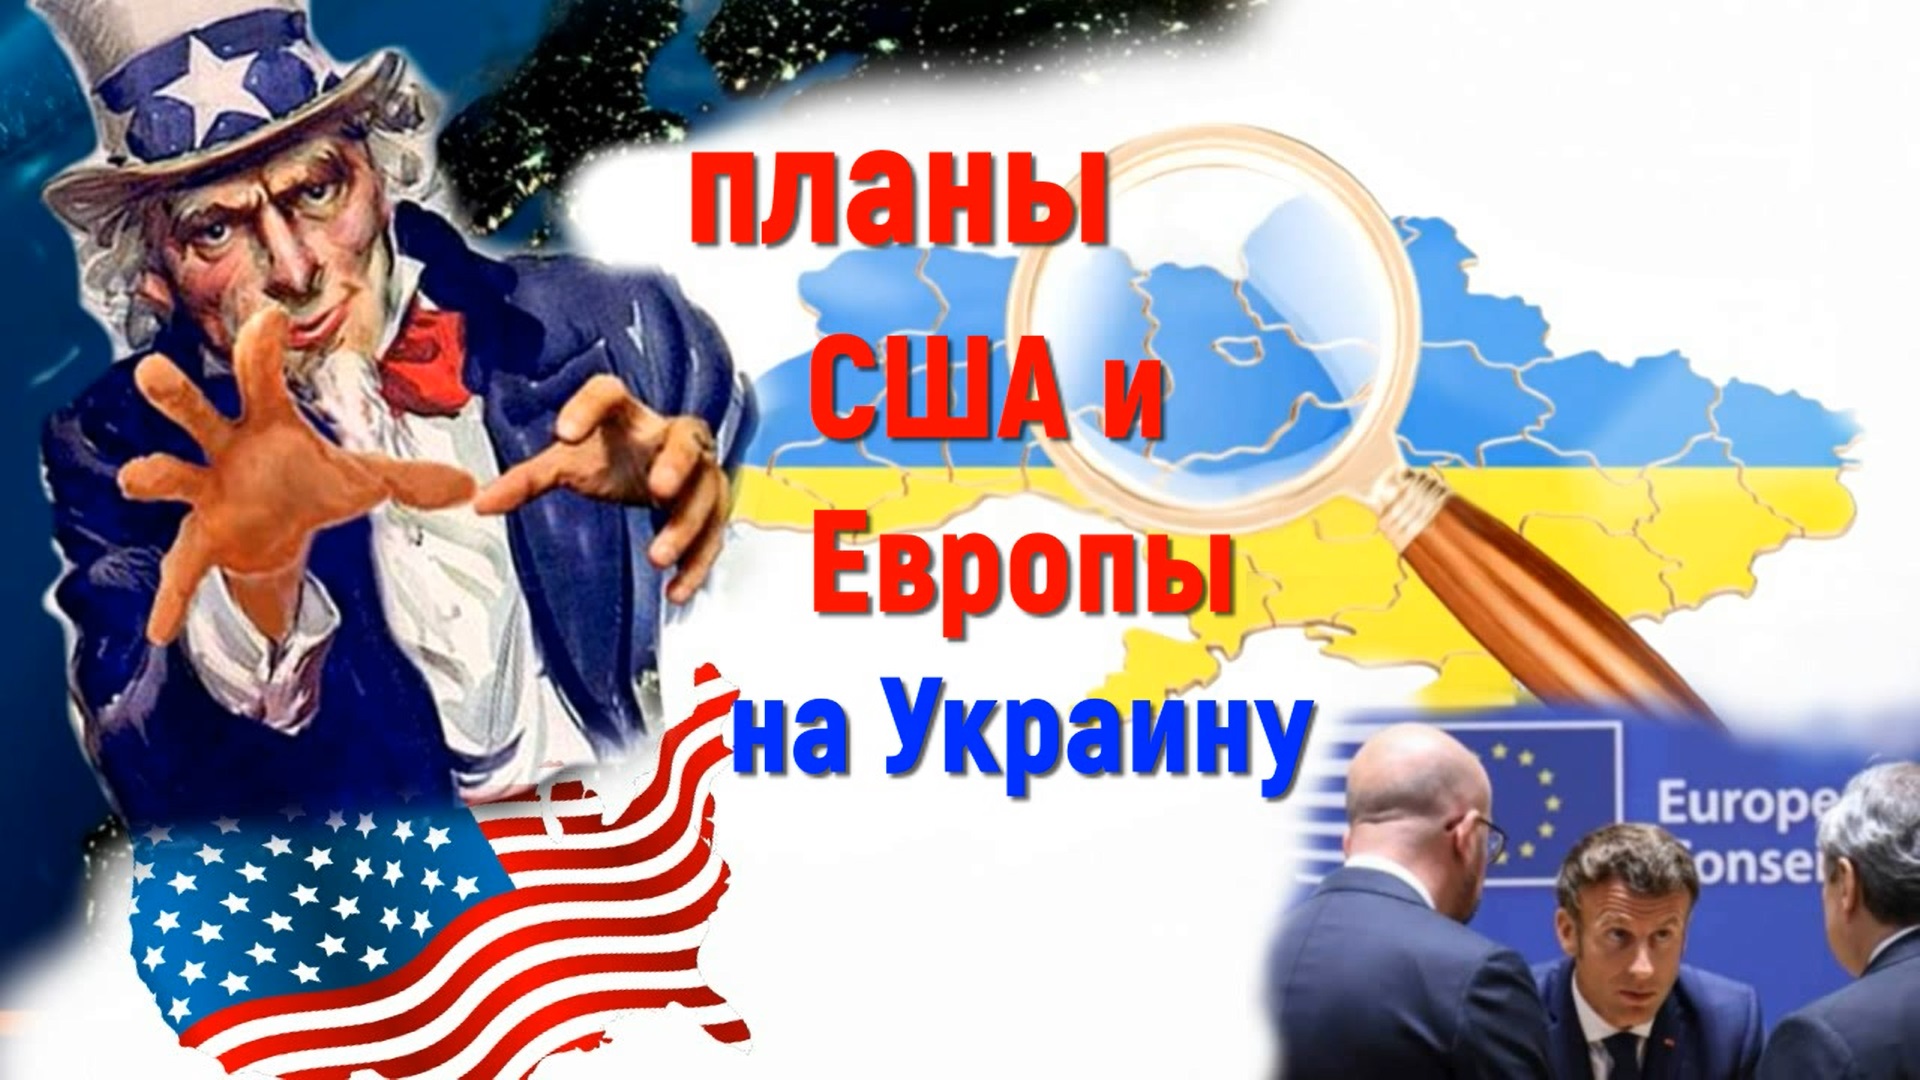 Планы США и Европы на Украину